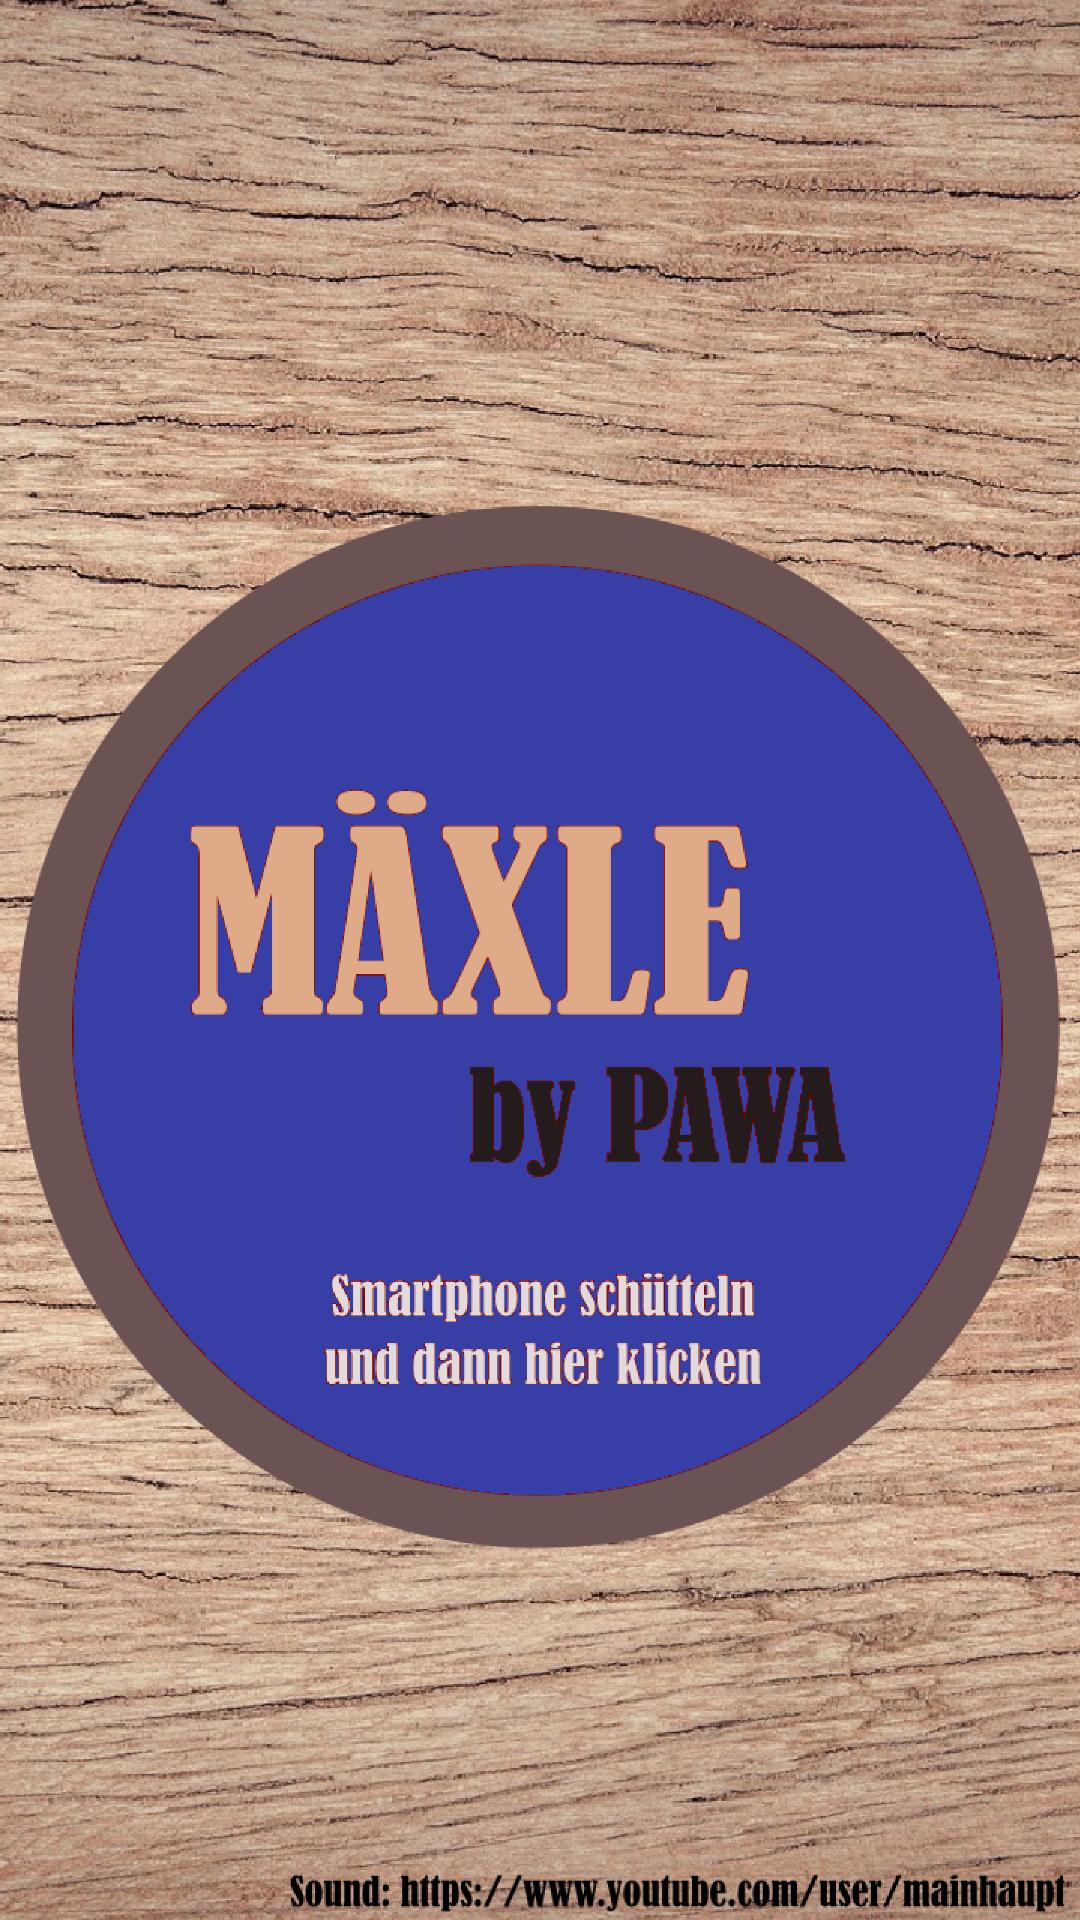 Mäxle Bescheißer Würfelspiel by PAWA for Android - APK Download